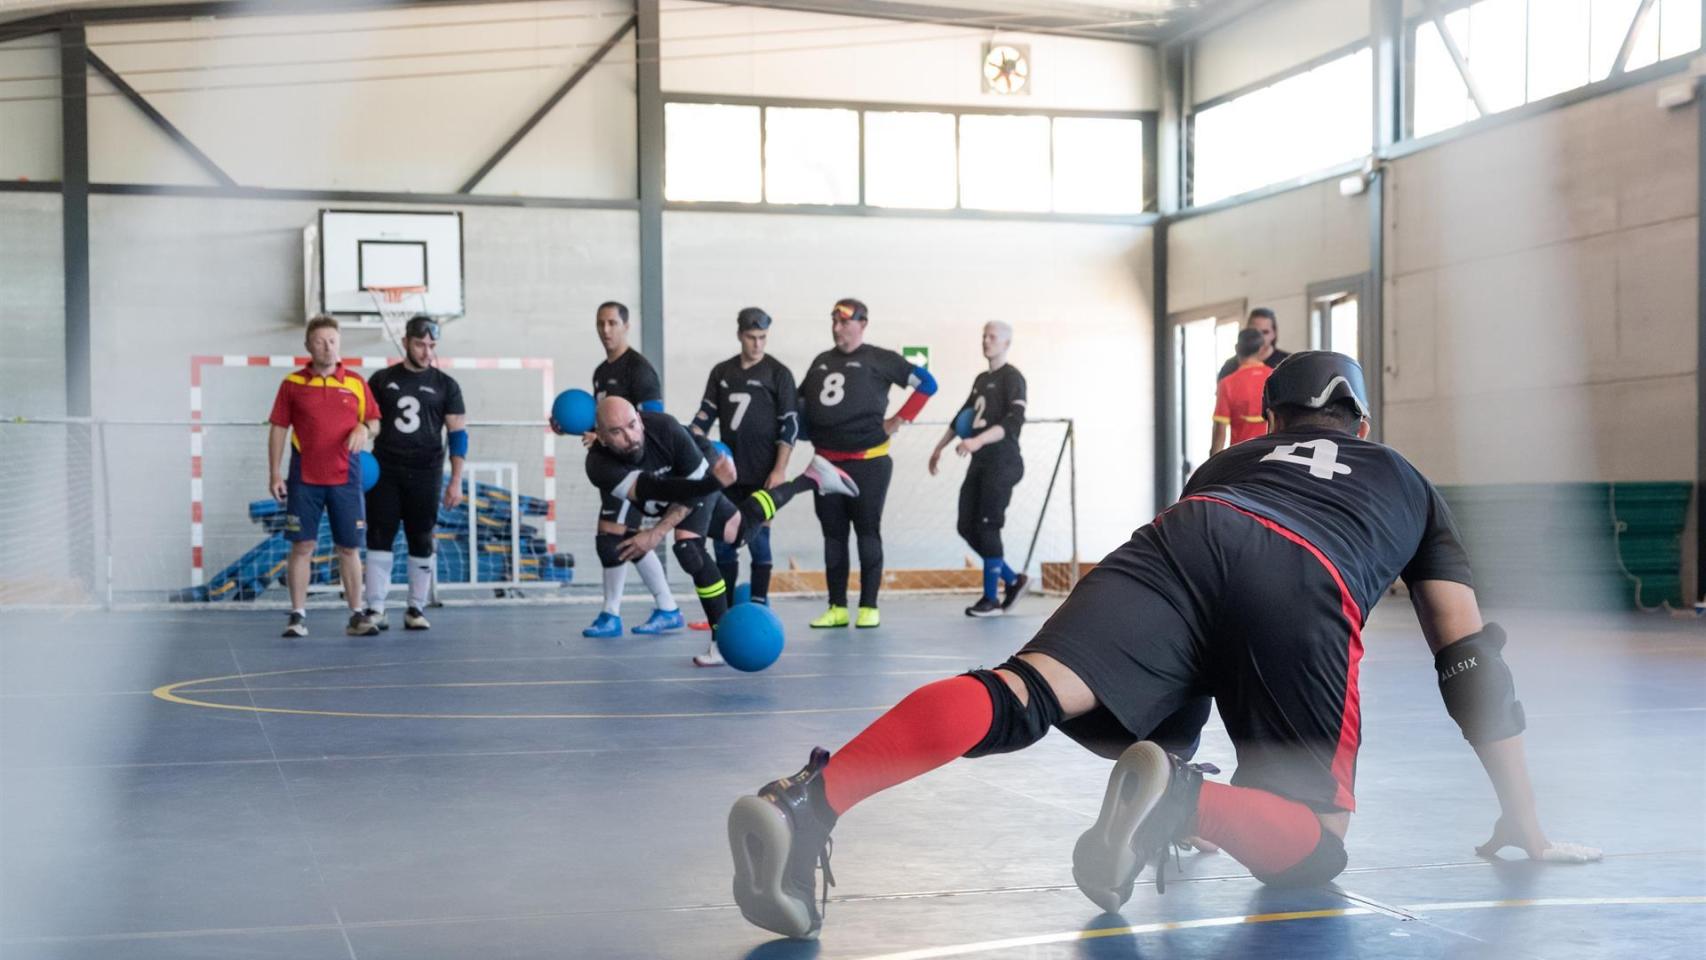 Imágenes del día: así se juega al goalball, el deporte que se entrena en Azuqueca de Henares